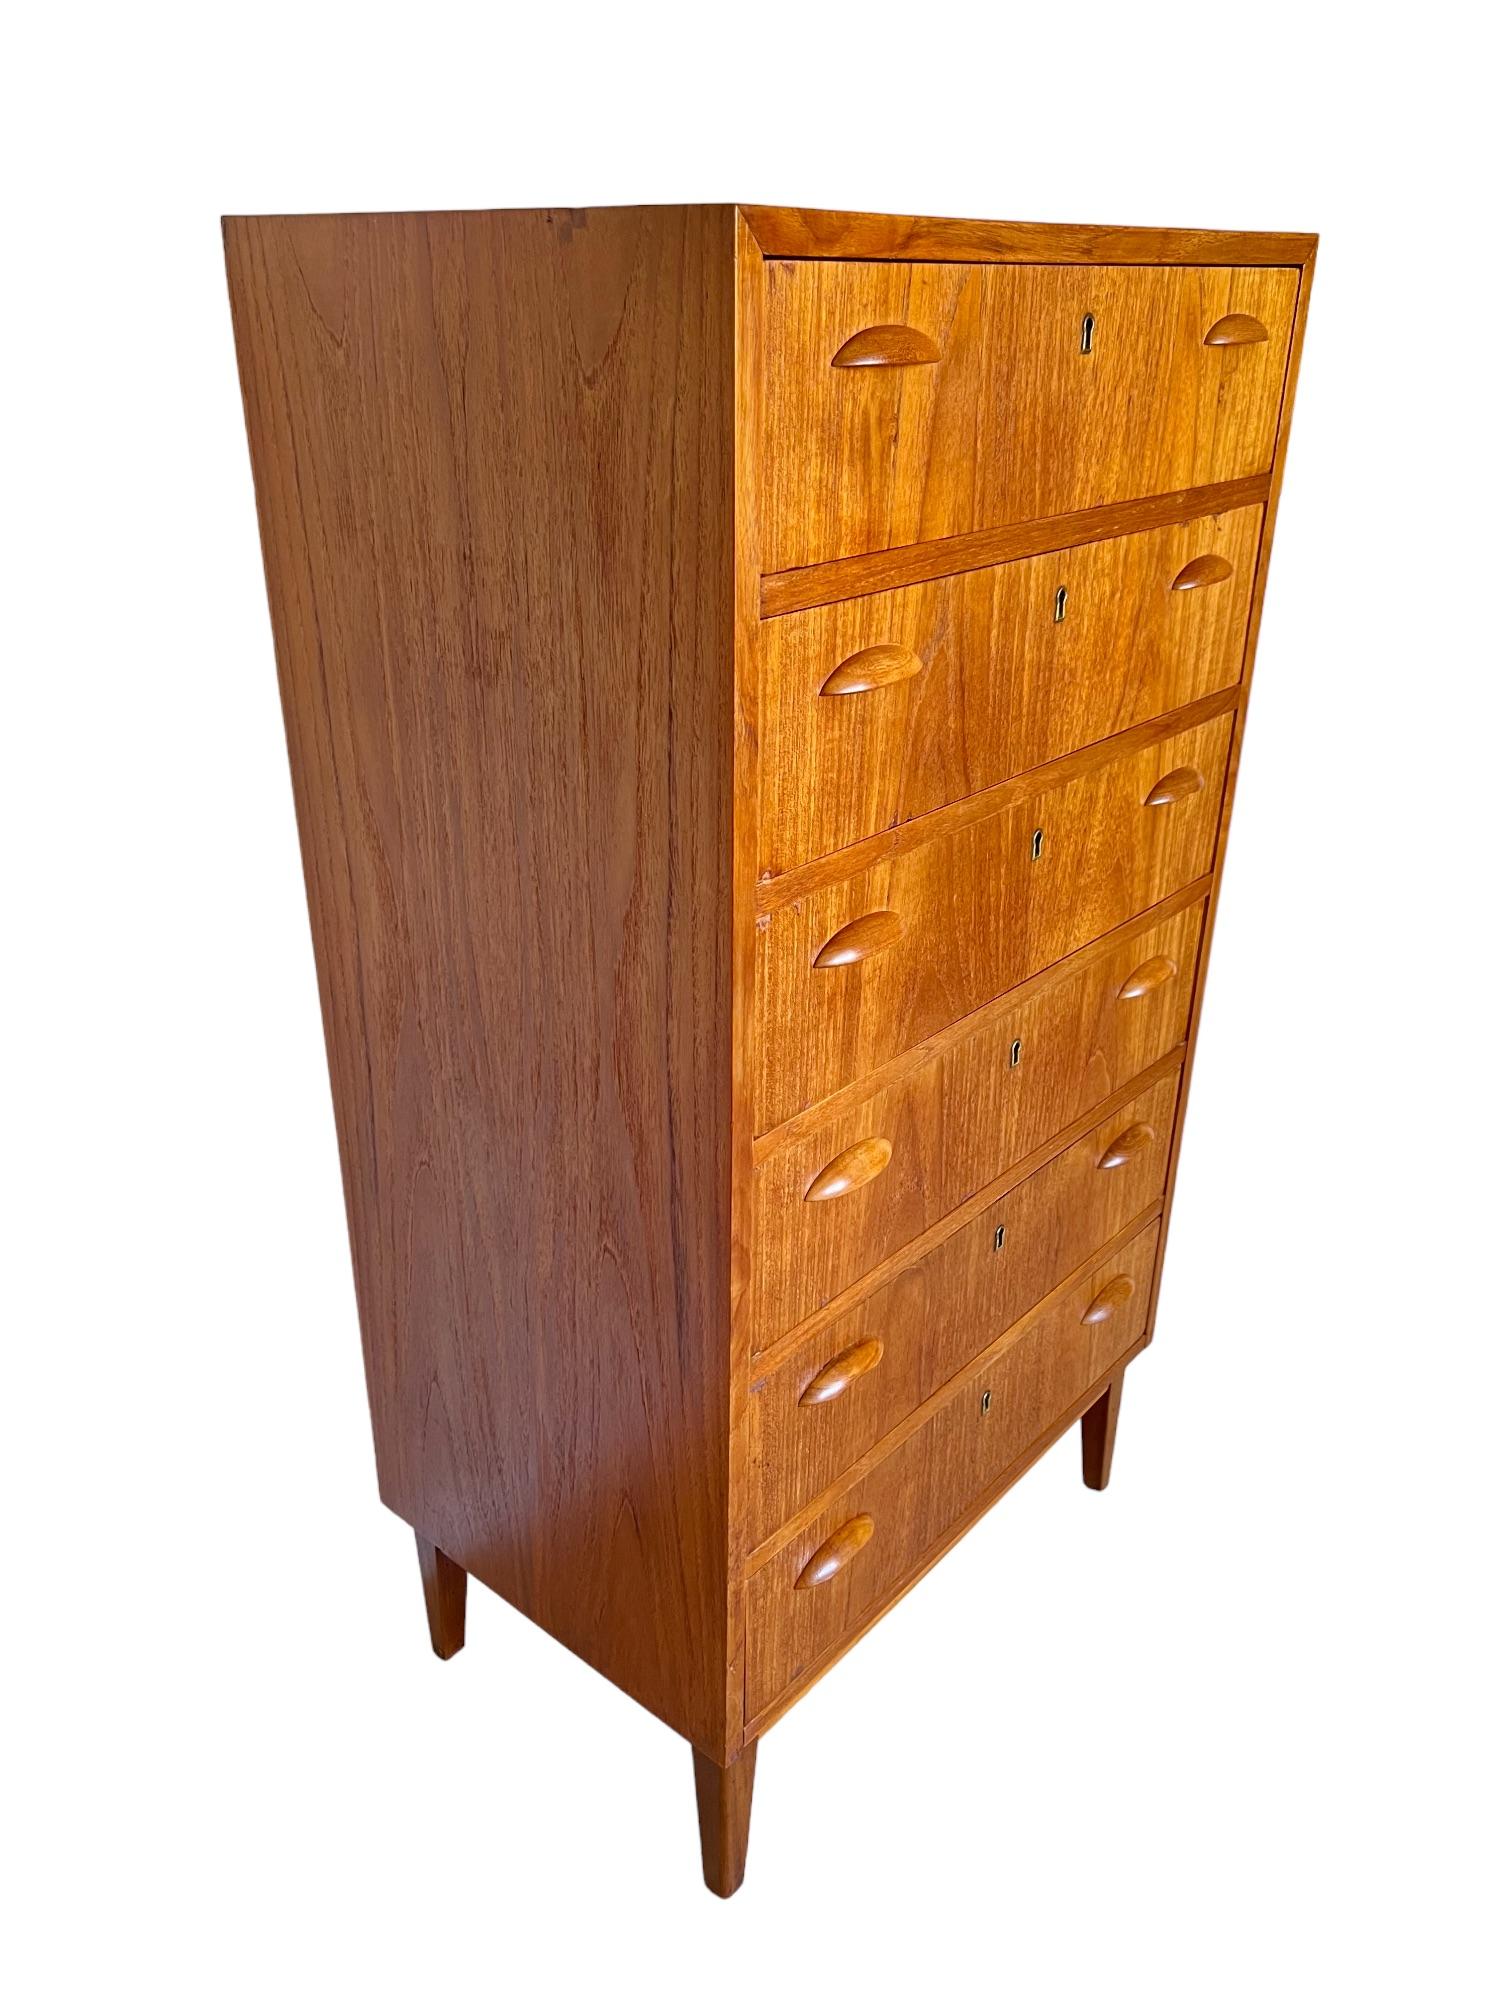 Carved Mid-Century Modern Teak Highboy Dresser, 1950s For Sale